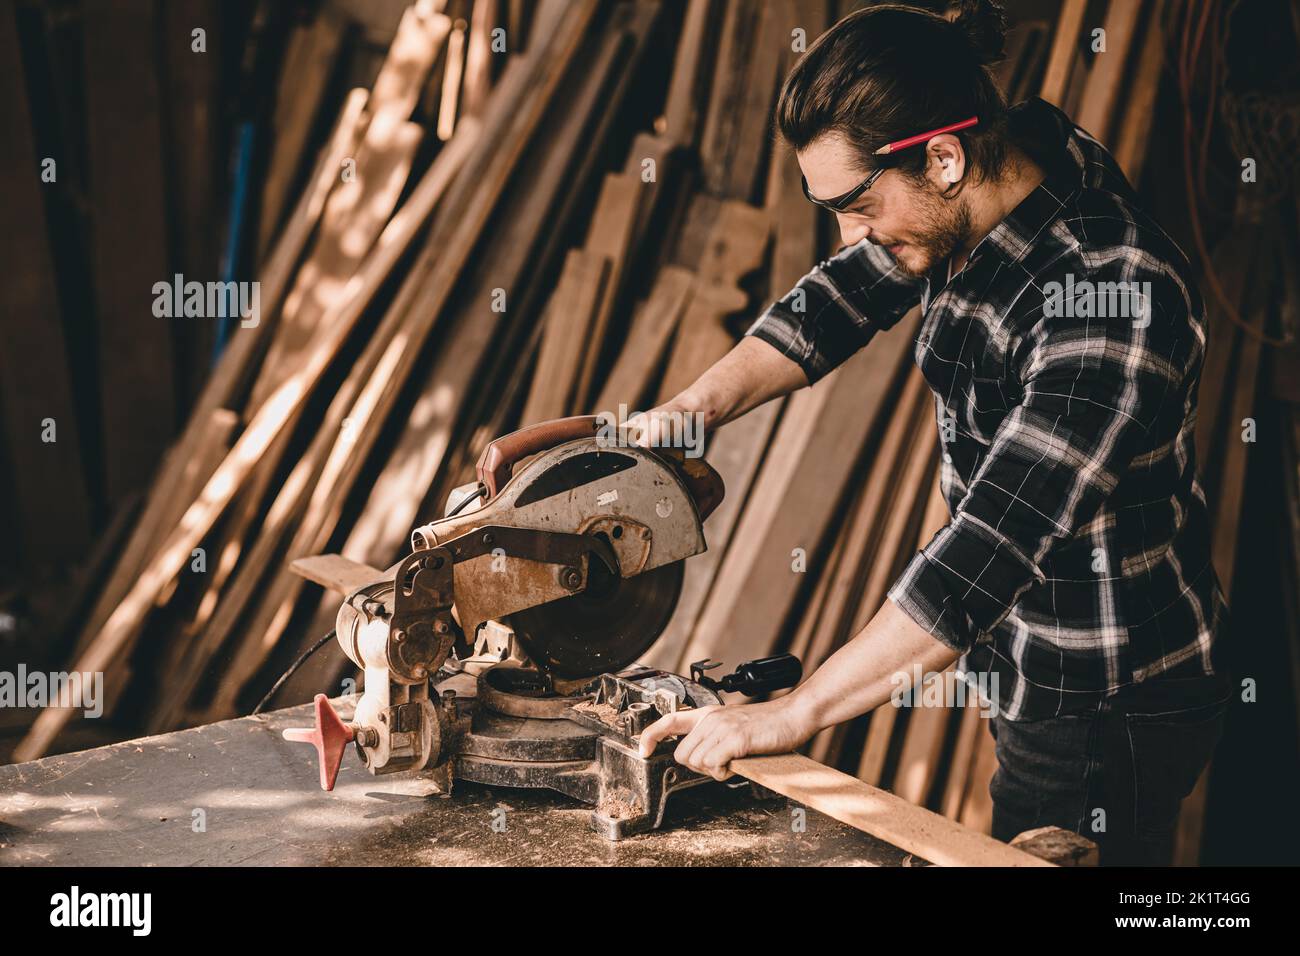 Professionista uomo falegname autentico artigiano lavoratore di legno. Joiner o costruttore di mobili casa progetti diy maker maschio. Foto Stock